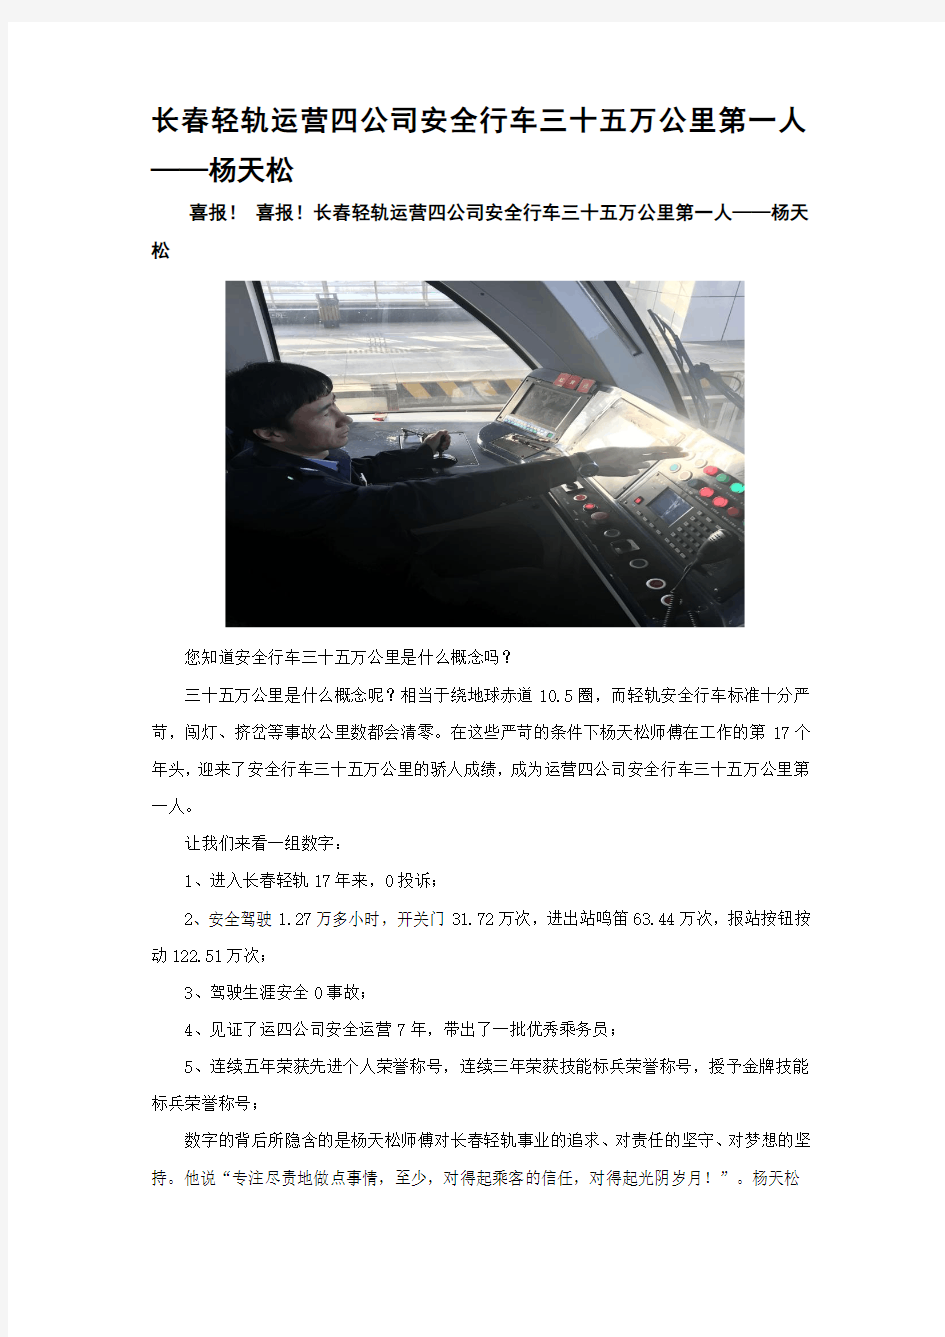 长春轻轨运营四公司安全行车三十五万公里第一人——杨天松